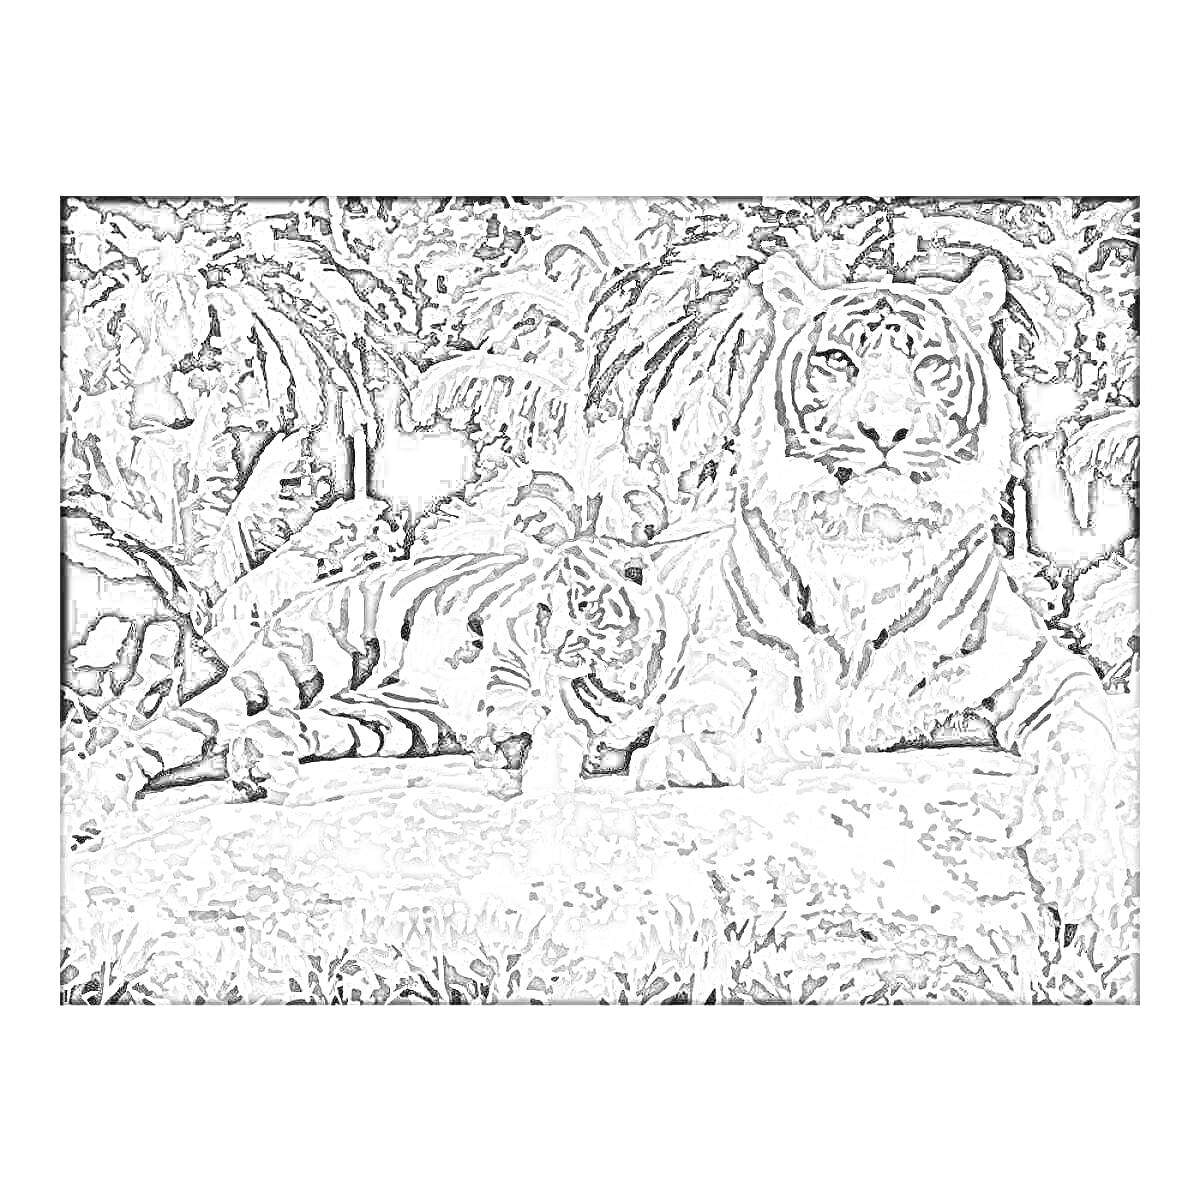 Раскраска Раскраска по номерам с изображением взрослого тигра и тигренка на фоне джунглей, сидящих на камне.